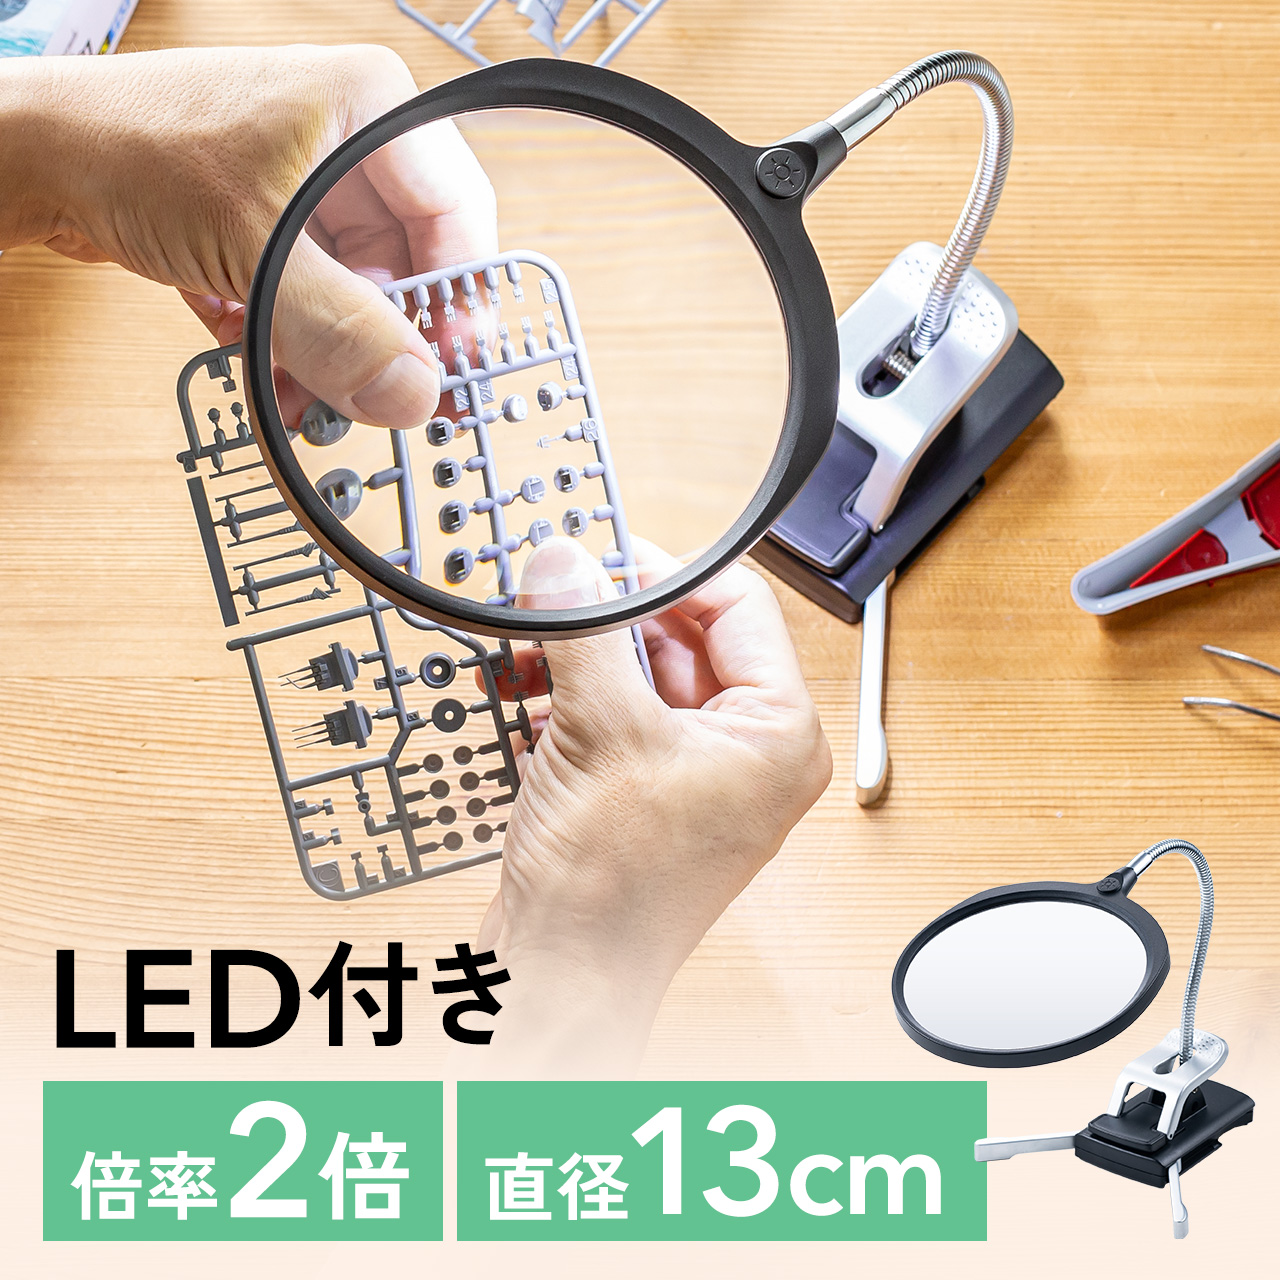 拡大鏡 ルーペ スタンド LED ライト付き 作業用 スタンドルーペ クリップ クランプ固定 レンズ径13cm ネイル 手芸 模型製作 プラモデル ハンダ用 400-LPE020